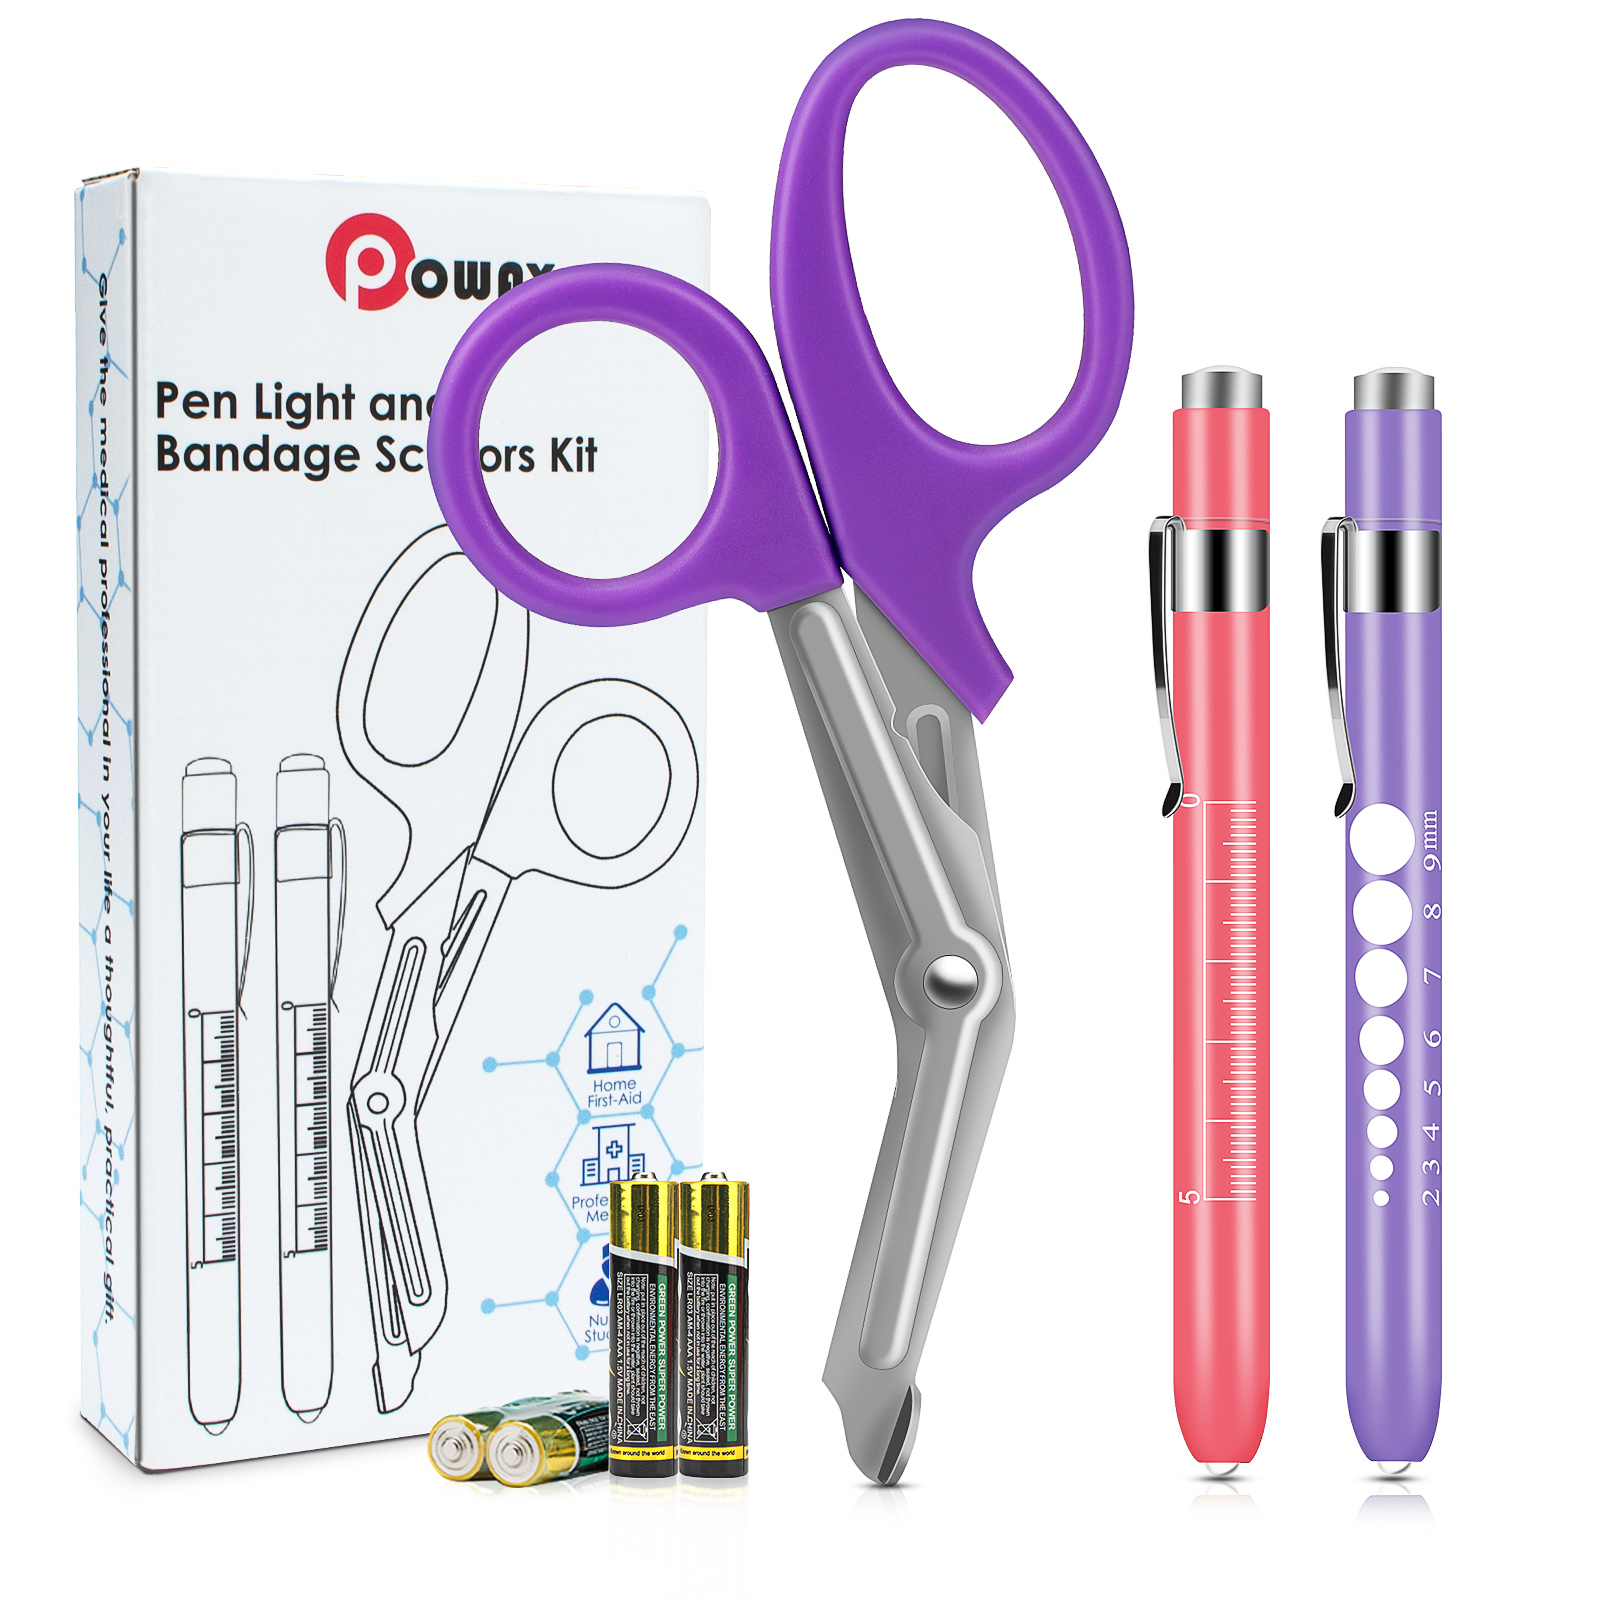 OPOWAY Medical Pen Светло-фиолетовые ножницы для перевязки 3 Пакет, Два многоразовых светодиодных фонарика для зрачков, с бесплатными батареями